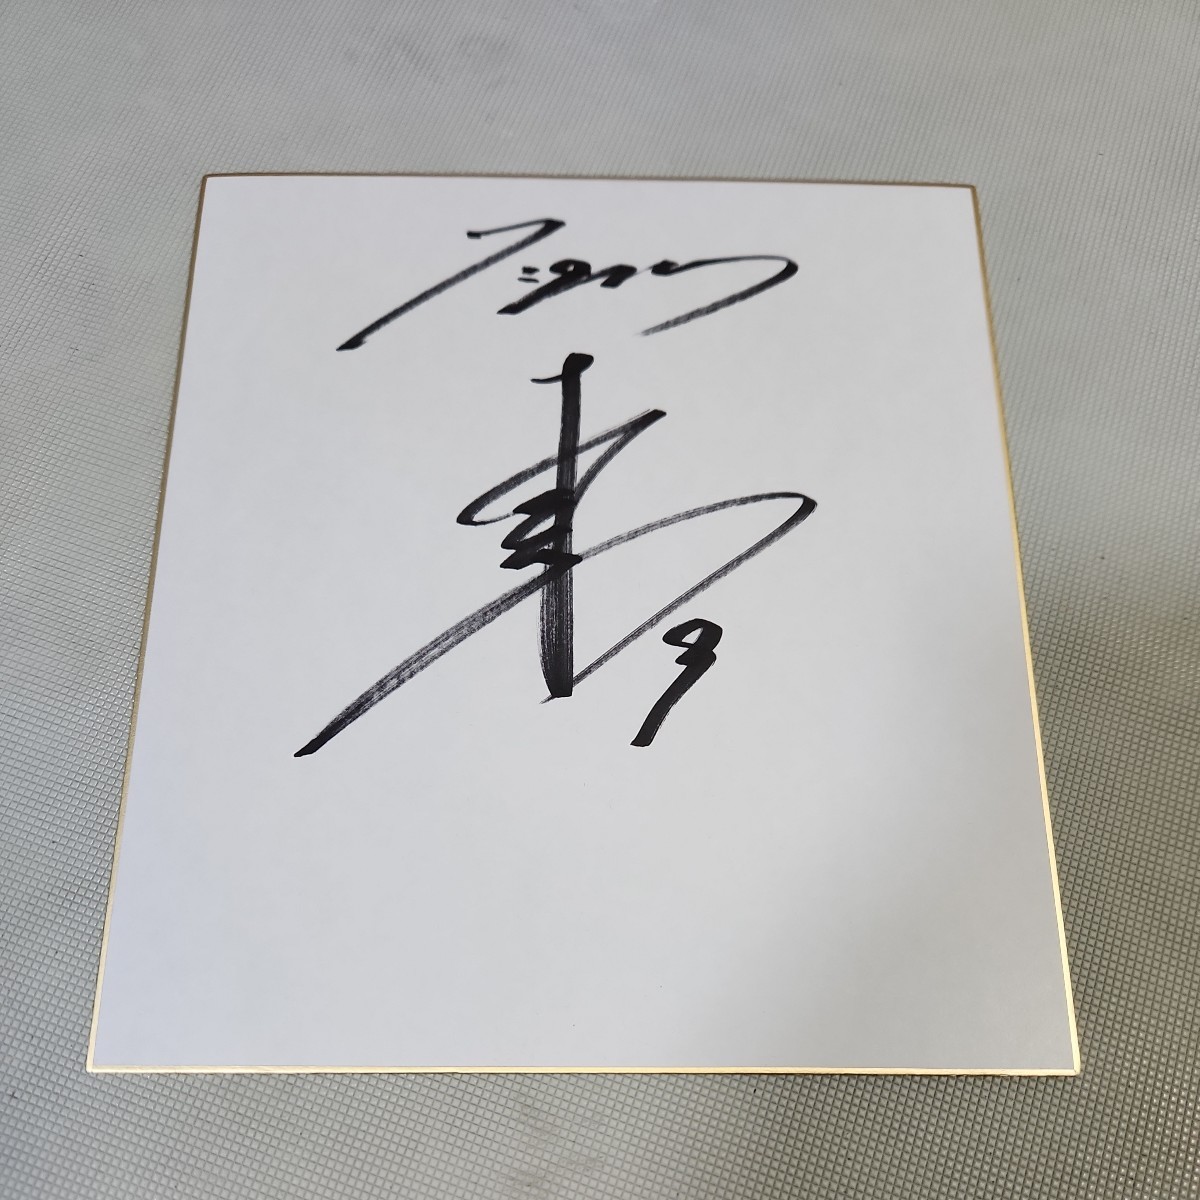 阪神虎队球员高山俊亲笔签名彩色纸, 棒球, 纪念品, 相关商品, 符号